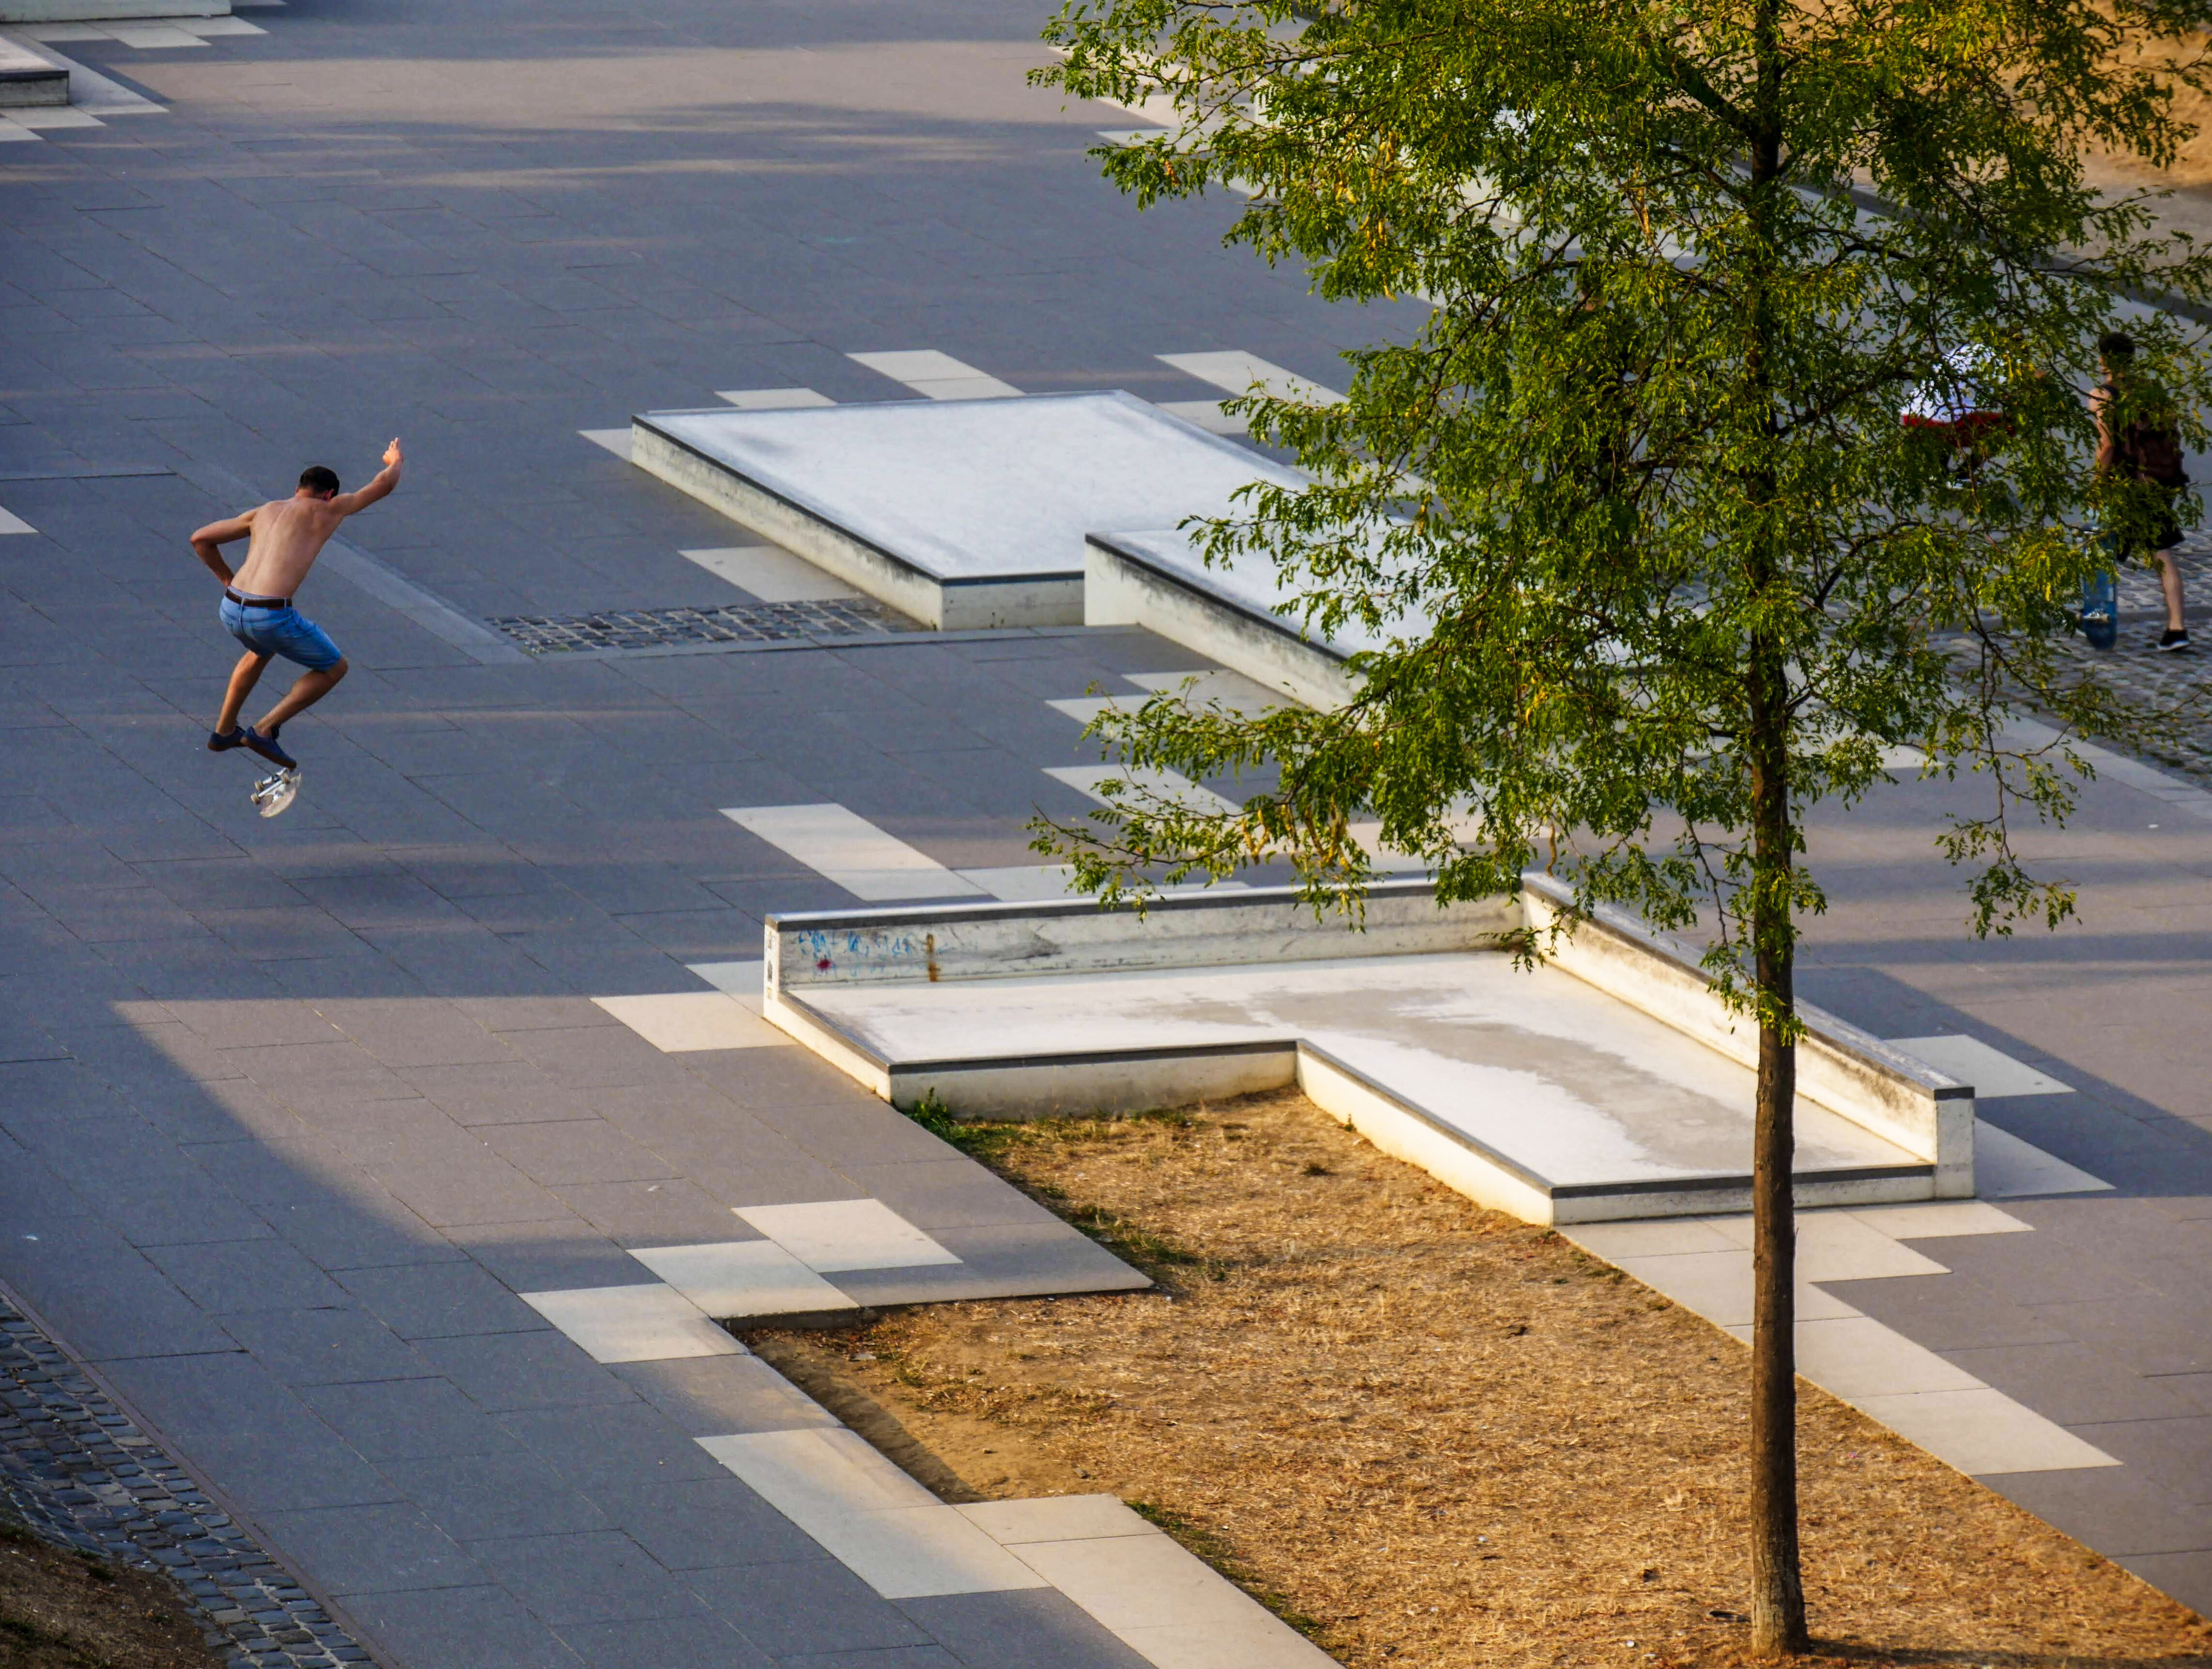 Skateboarder springt in die Luft und dreht sein Skateboard © Joris Felix